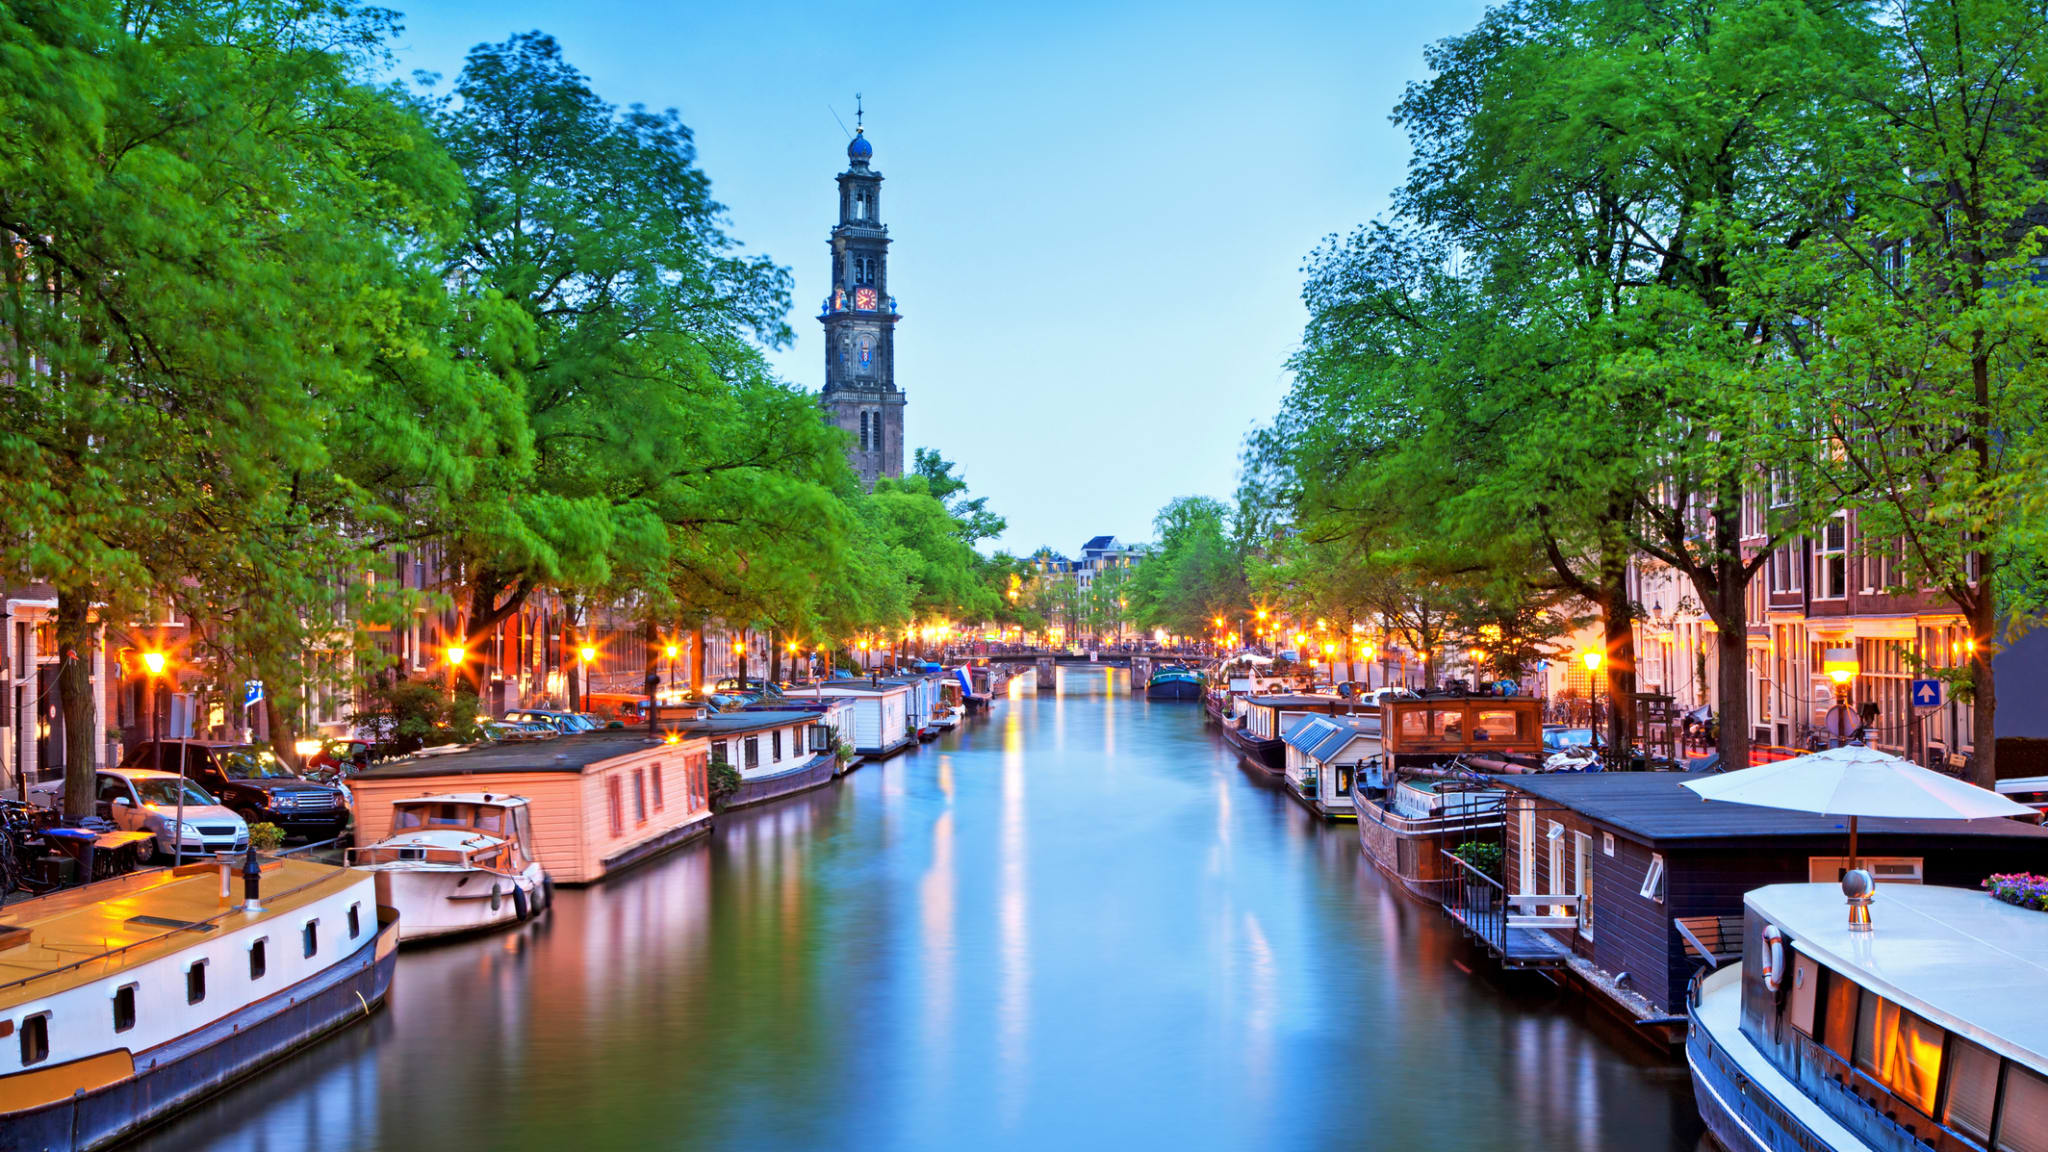 Blick auf den Kanal mit vielen Hausbooten in Amsterdam © iStock.com/Nikada